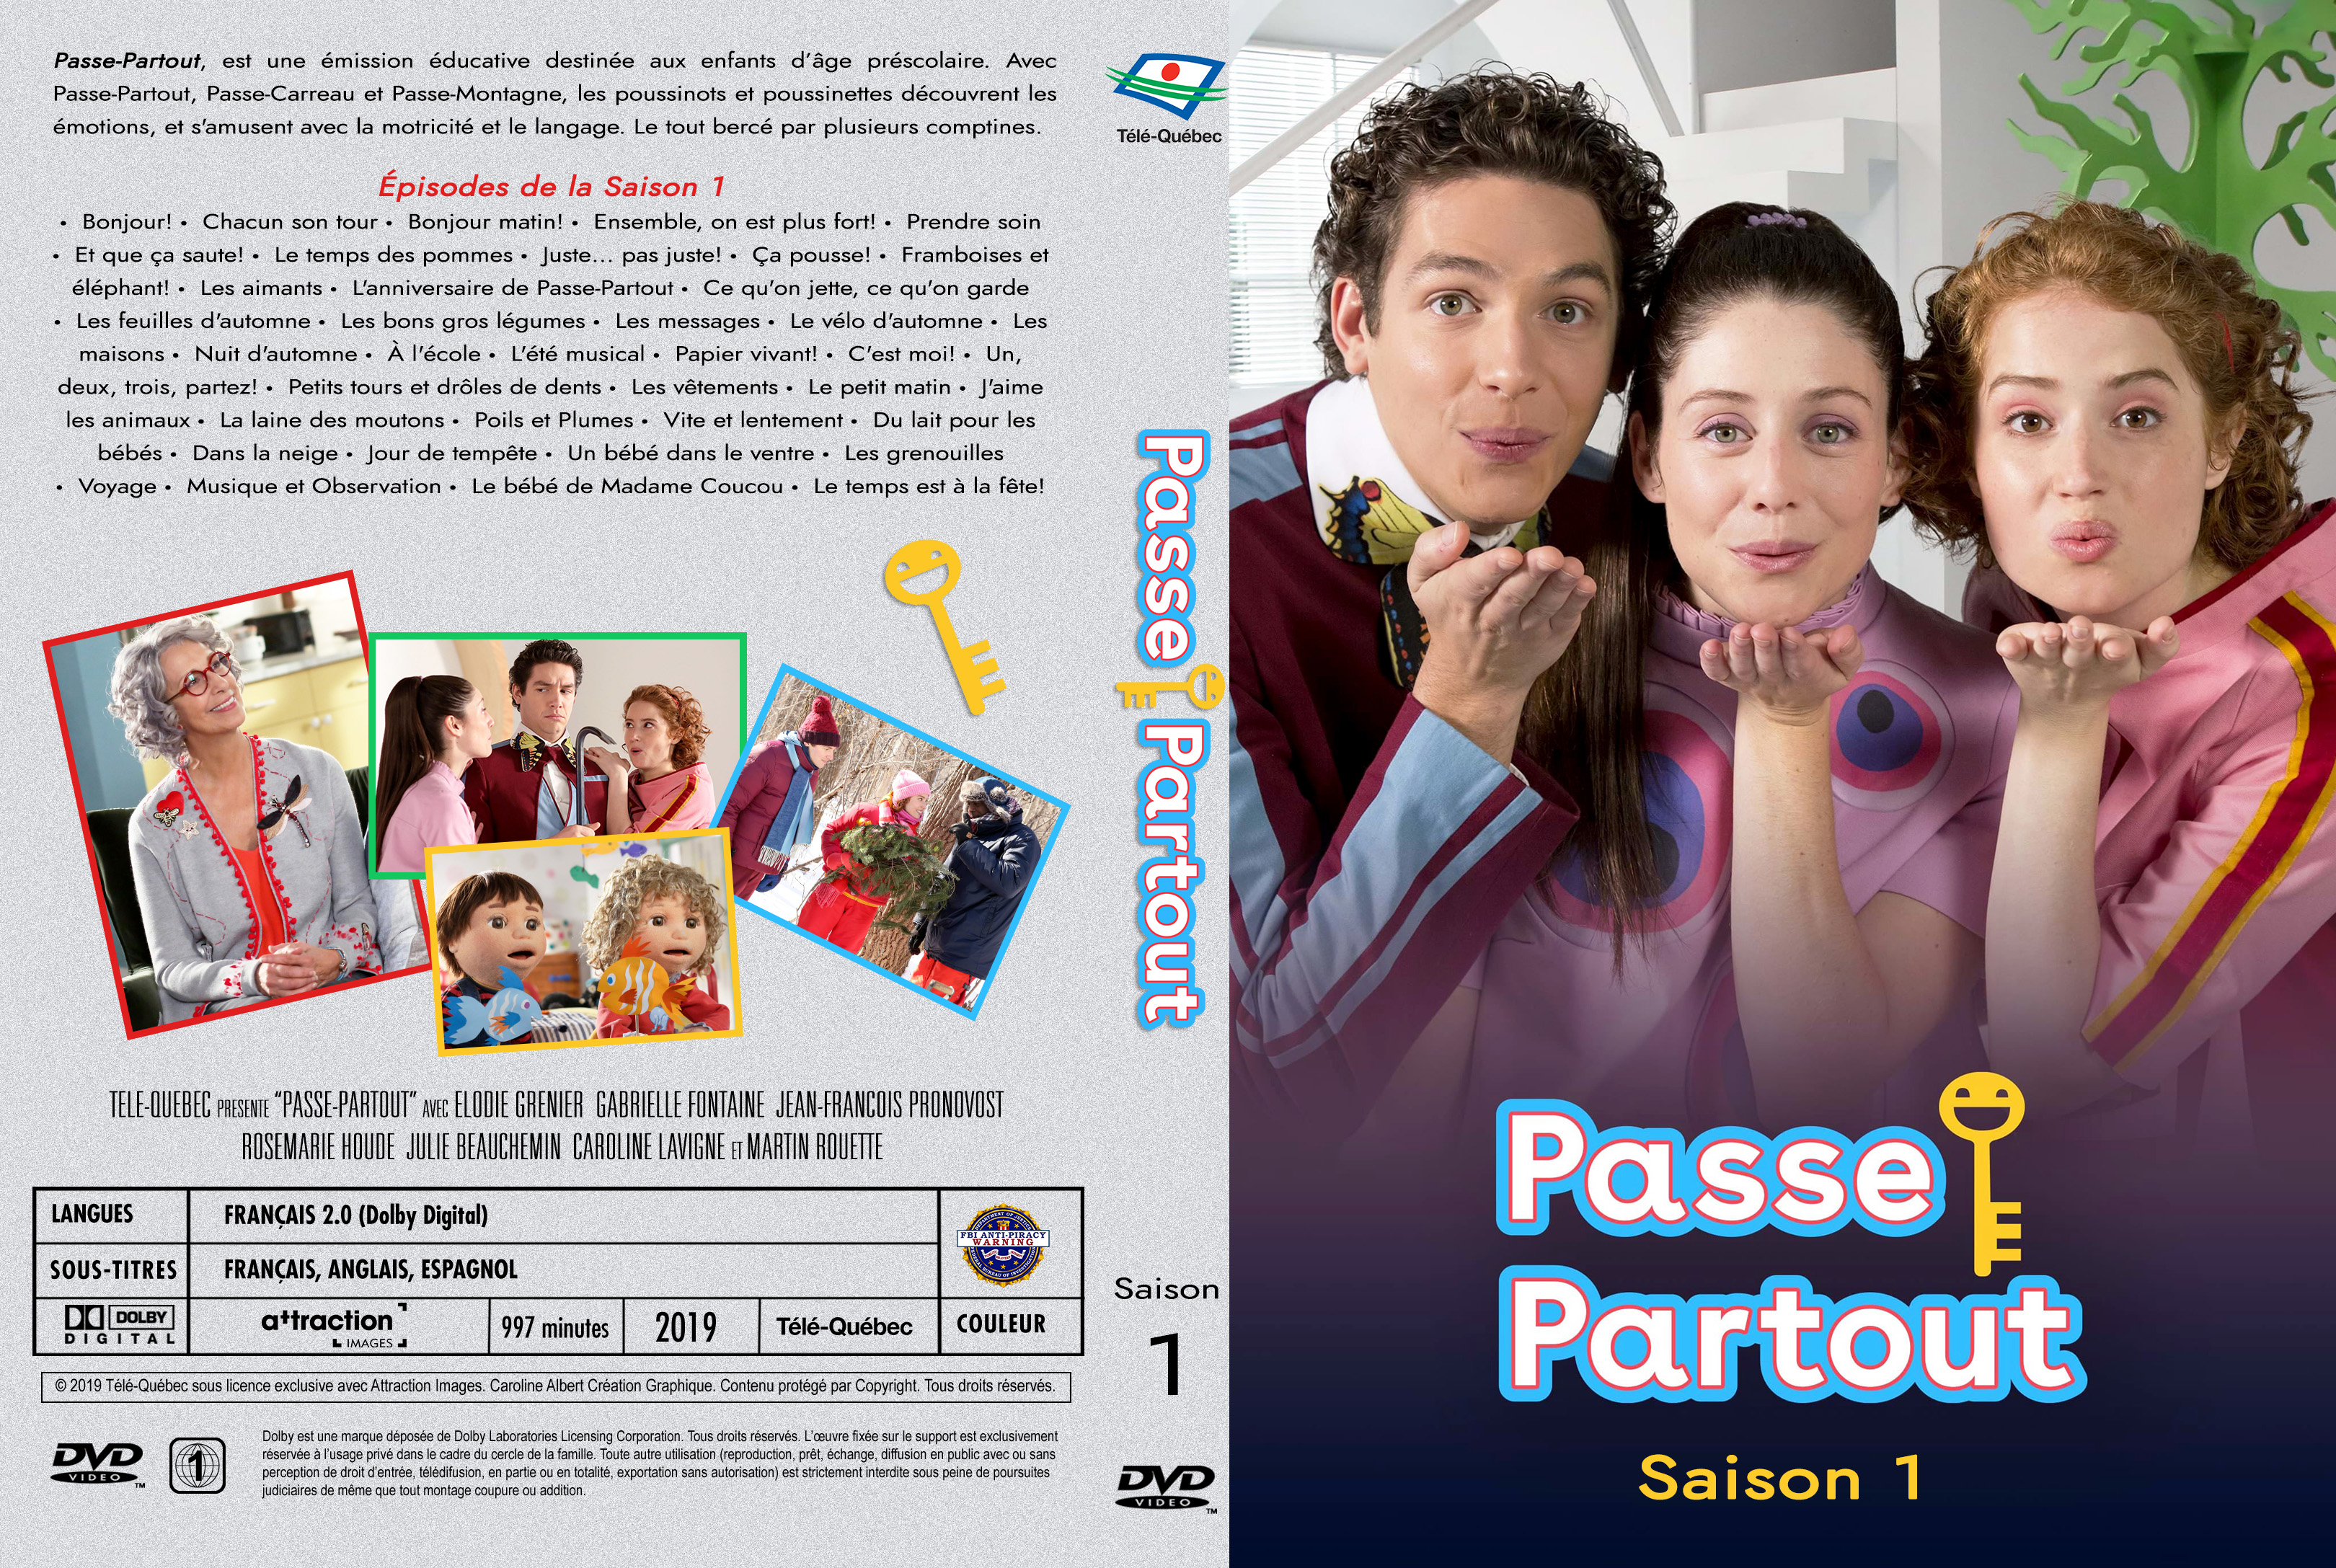 Jaquette DVD Passe-Partout Saison 1 custom